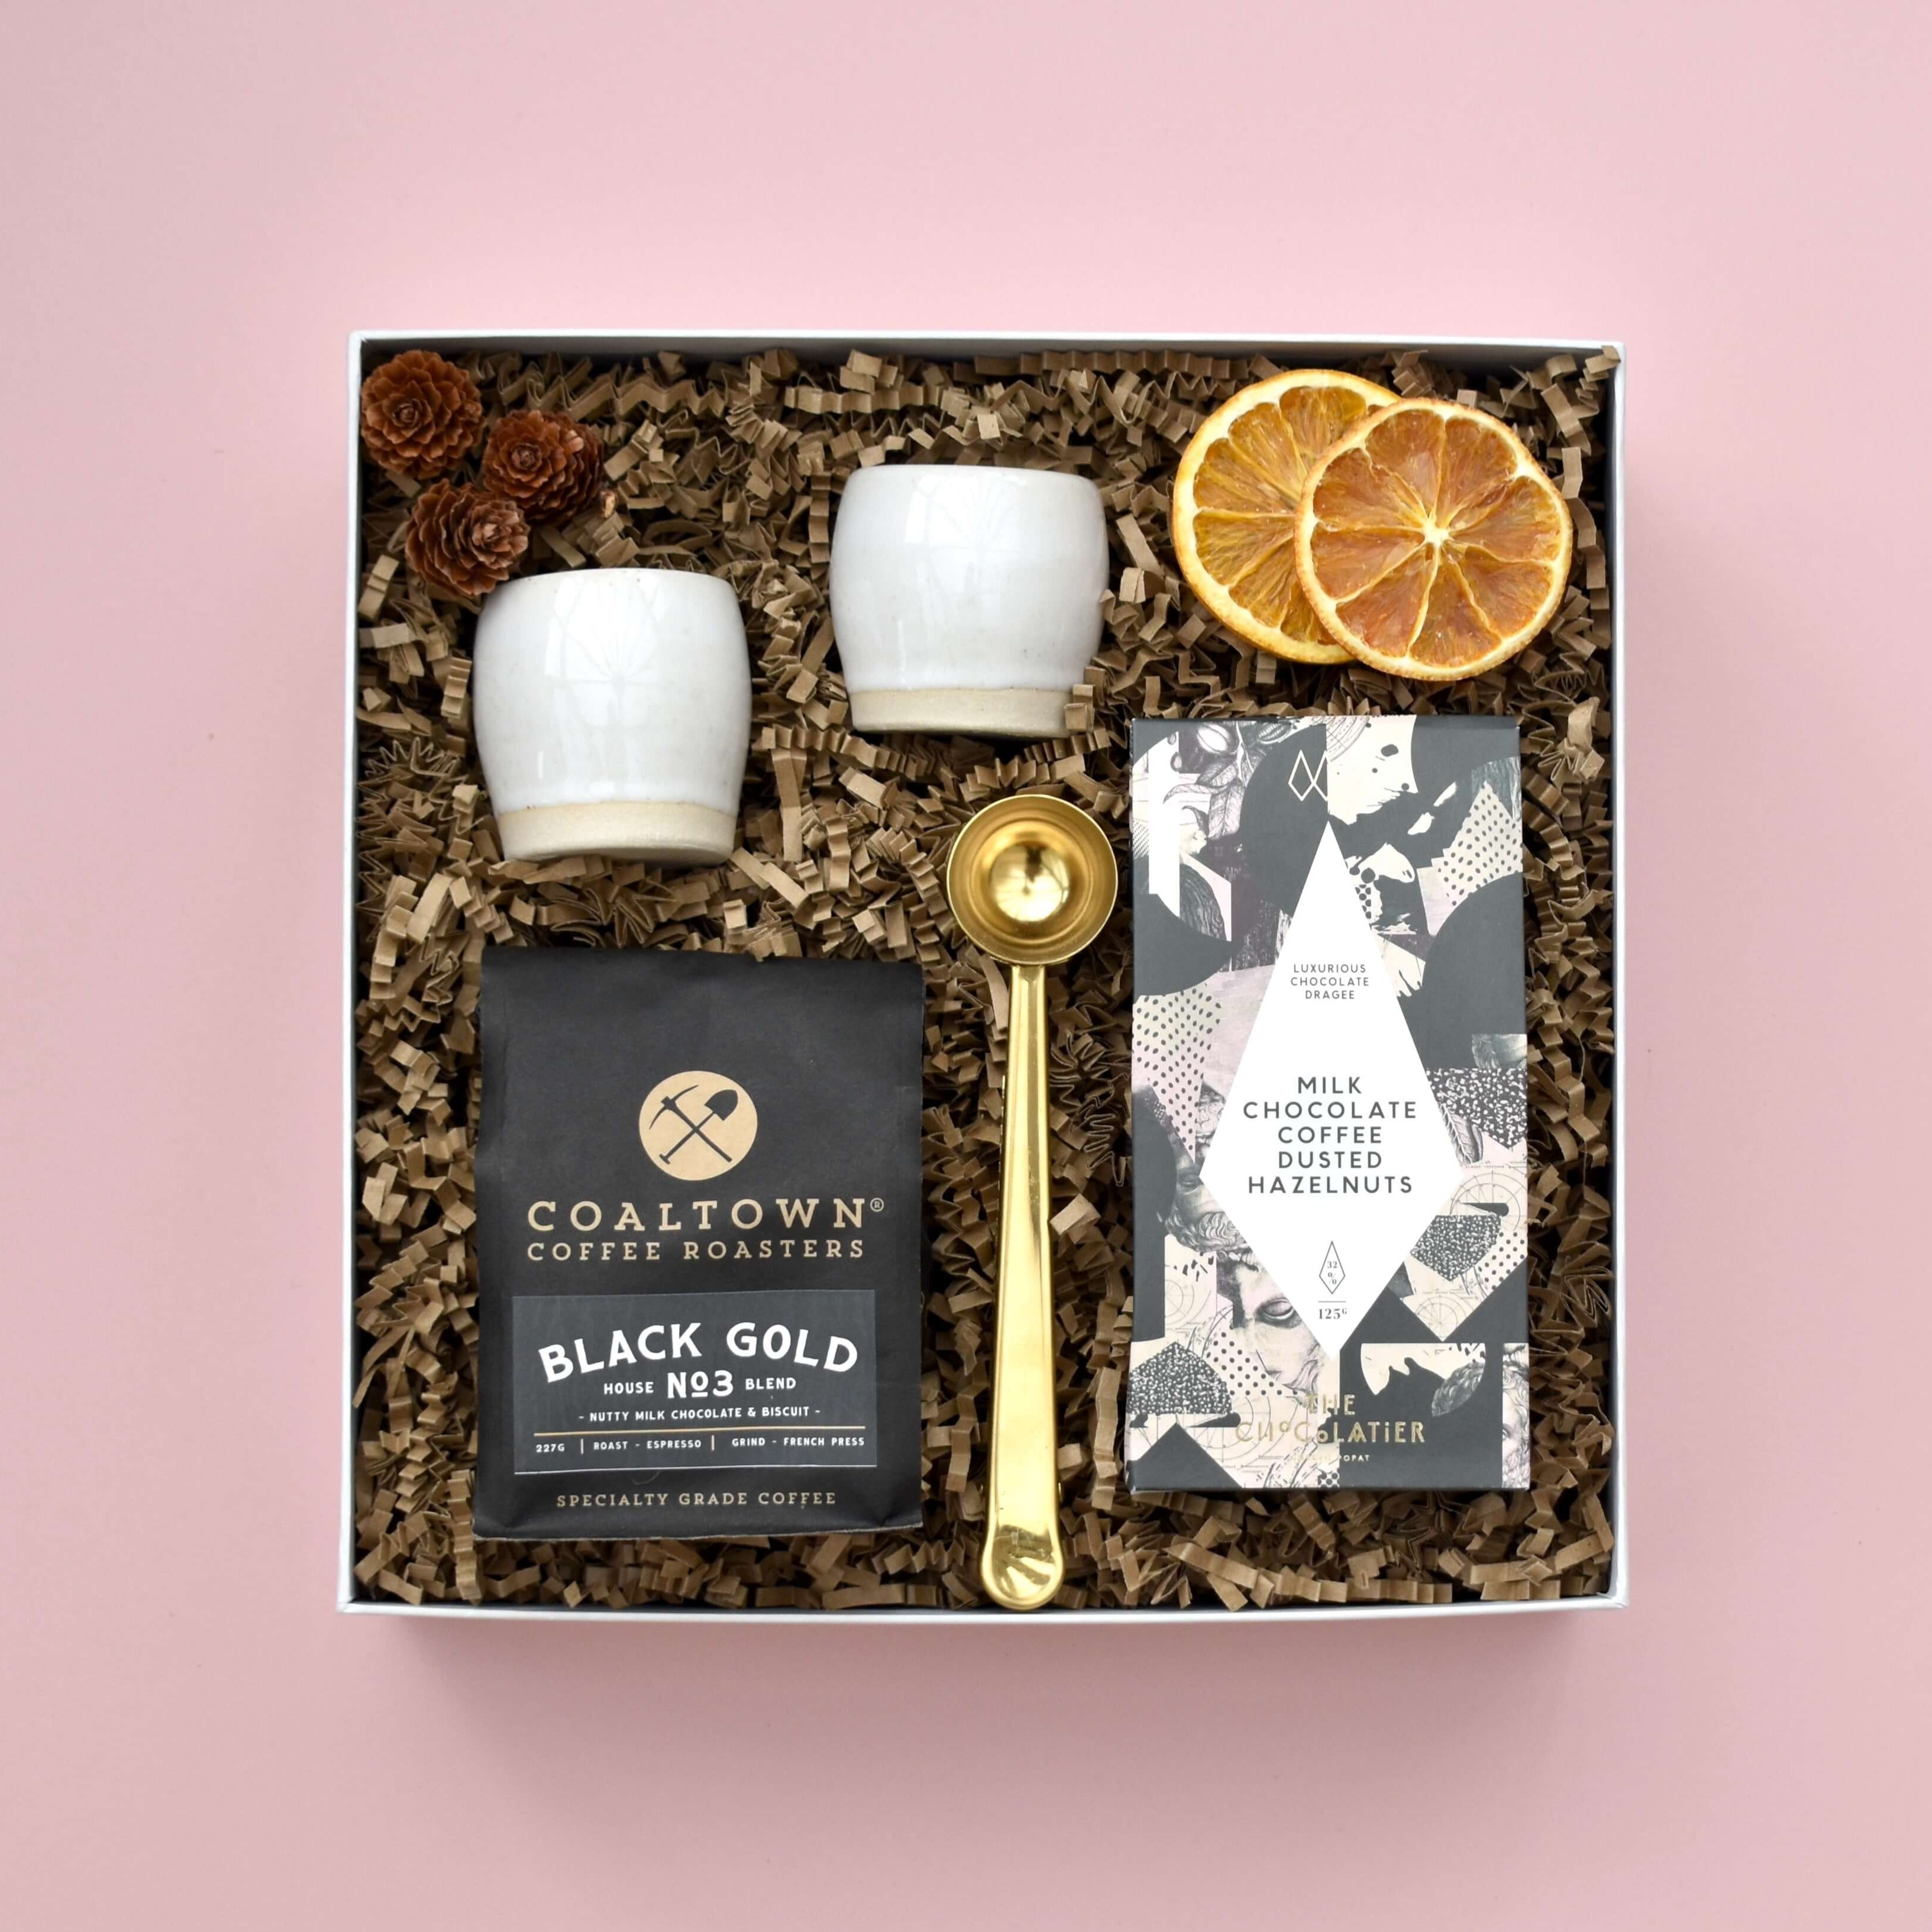 The Espresso Gift Box